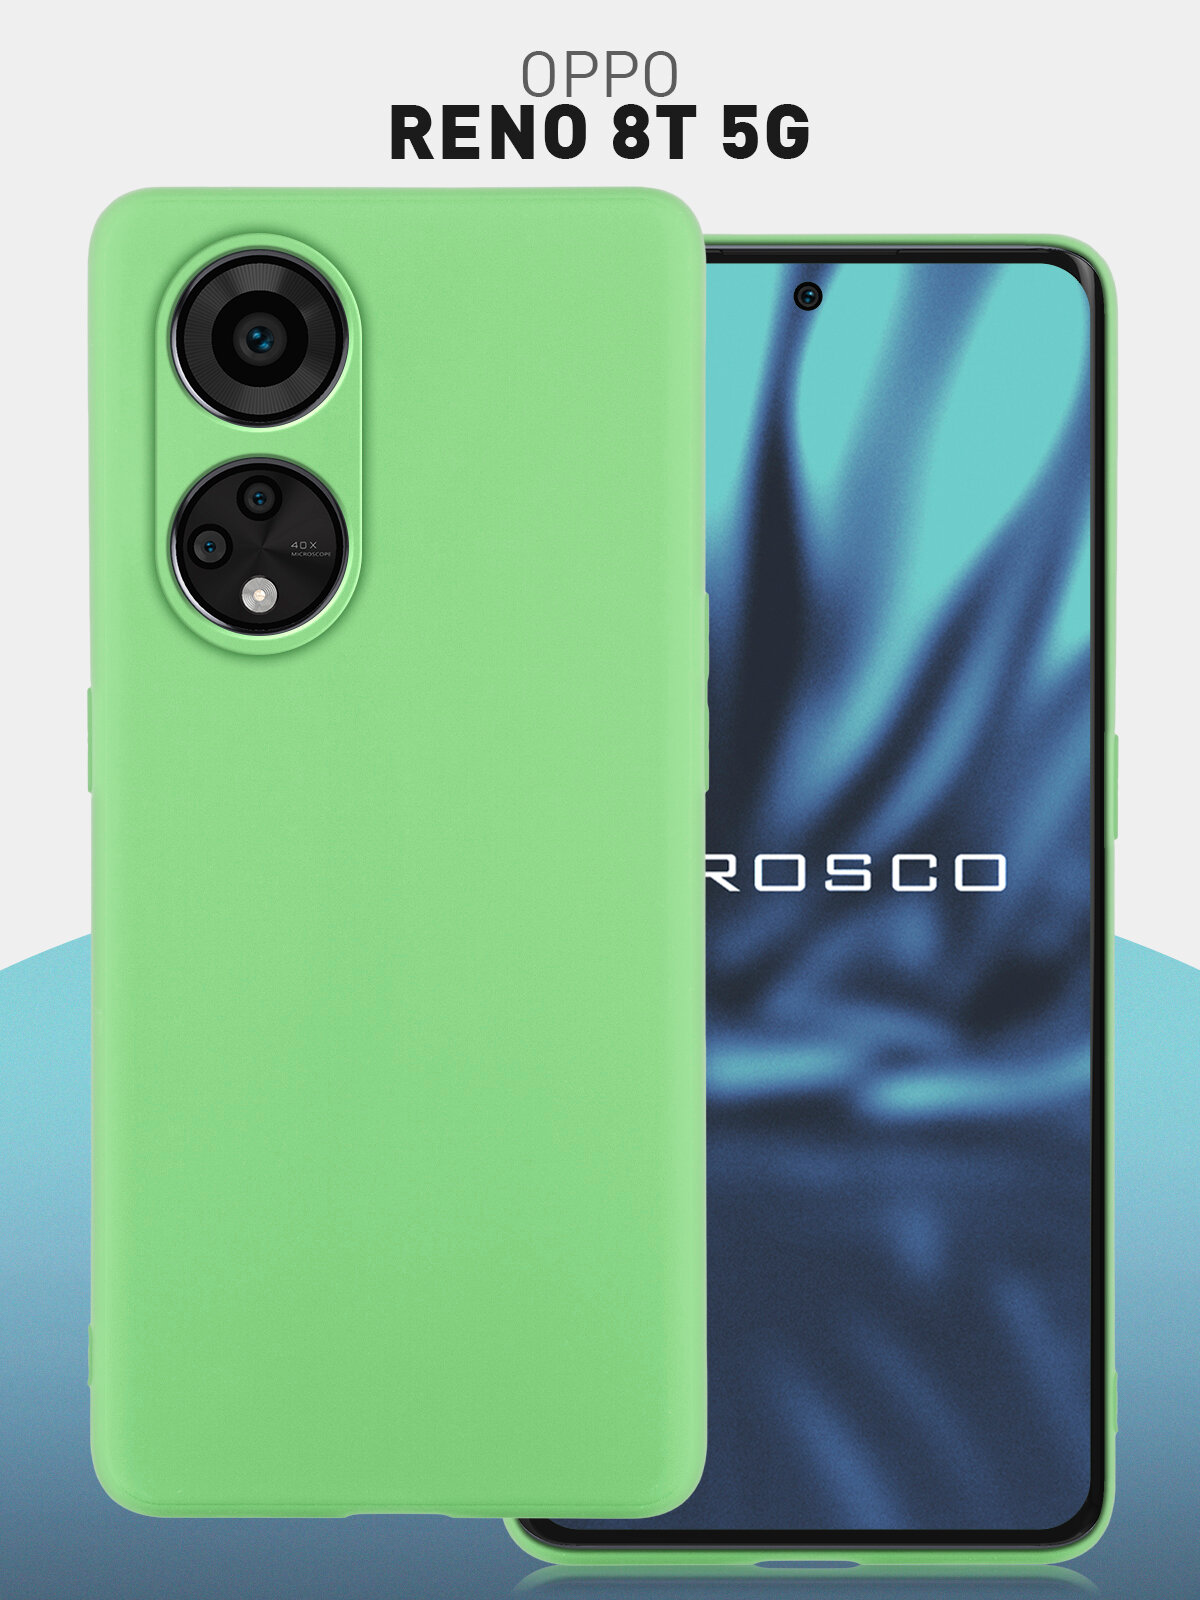 Чехол ROSCO для Oppo Reno 8T 5G (Оппо Рено 8Т 5Джи), силиконовый чехол, тонкий, матовое покрытие, защита модуля камер, зеленый